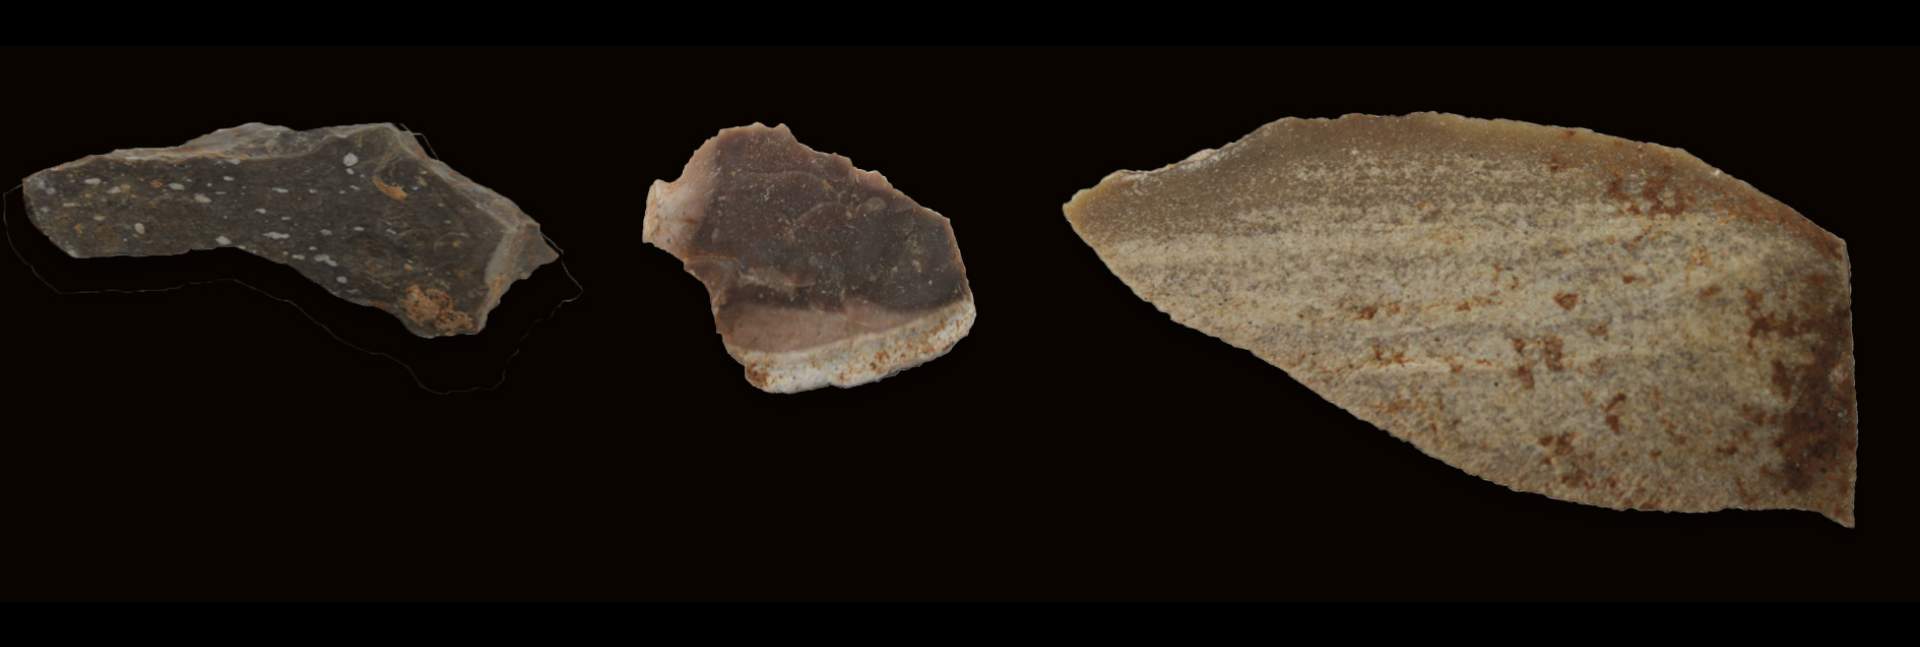 שלושה פריטים ארכיאולוגיים, שלוש דרגות חום שונות (מימין, ללא התאמת קנה מידה): להב, נתזים מסותתים ורסיסי צור שניתזו באופן ספונטני